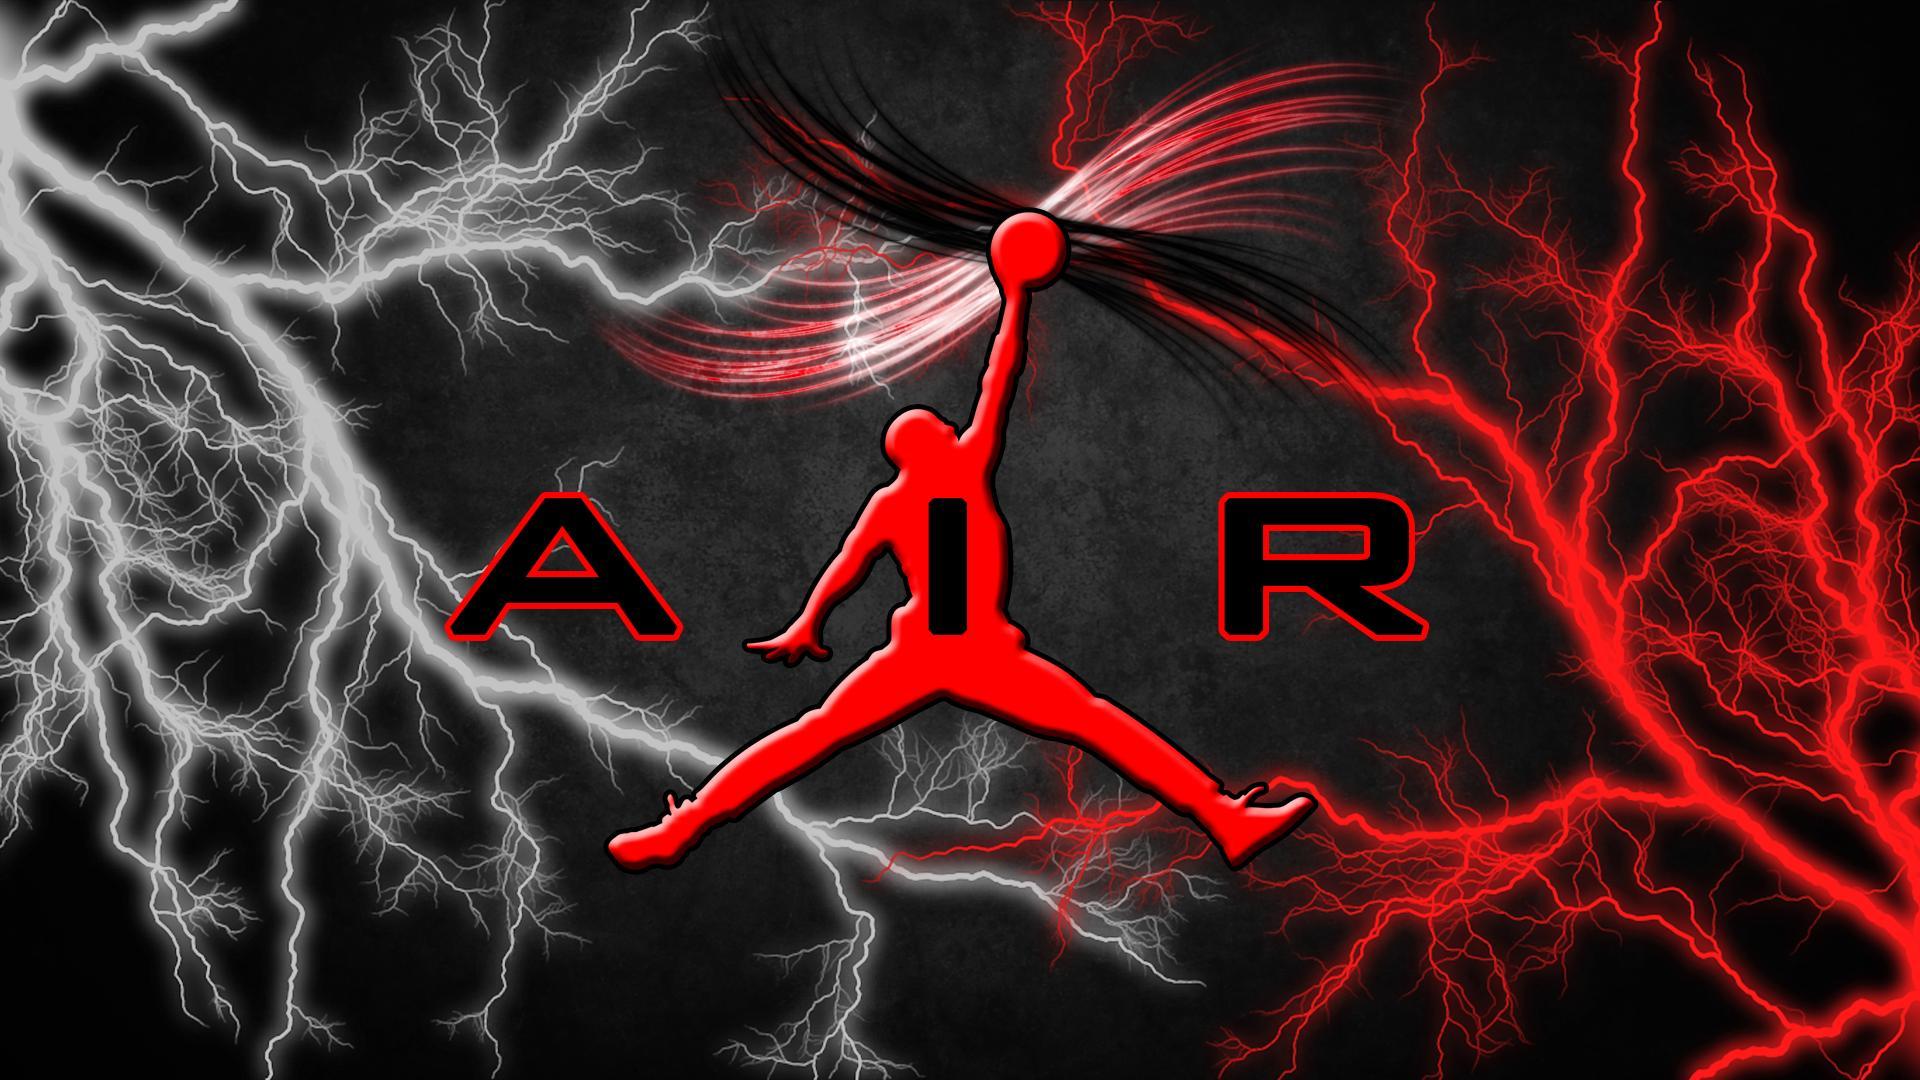 air jordan logo red